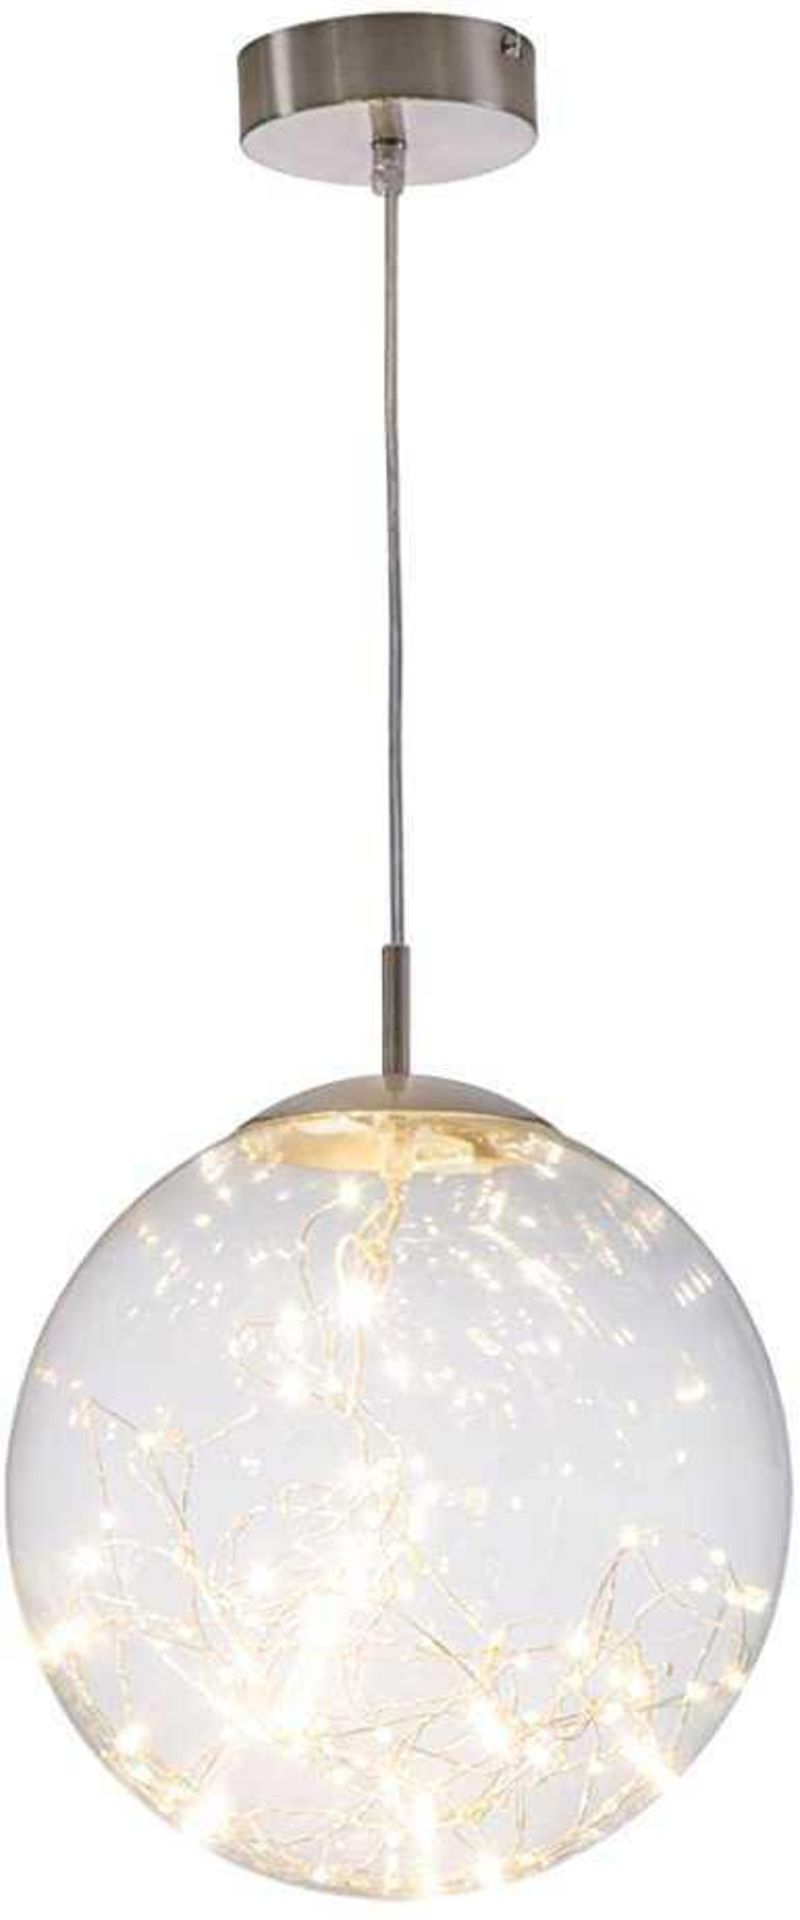 Rrp £50 Nina Leuchten Globe Led Designer Ceiling Light